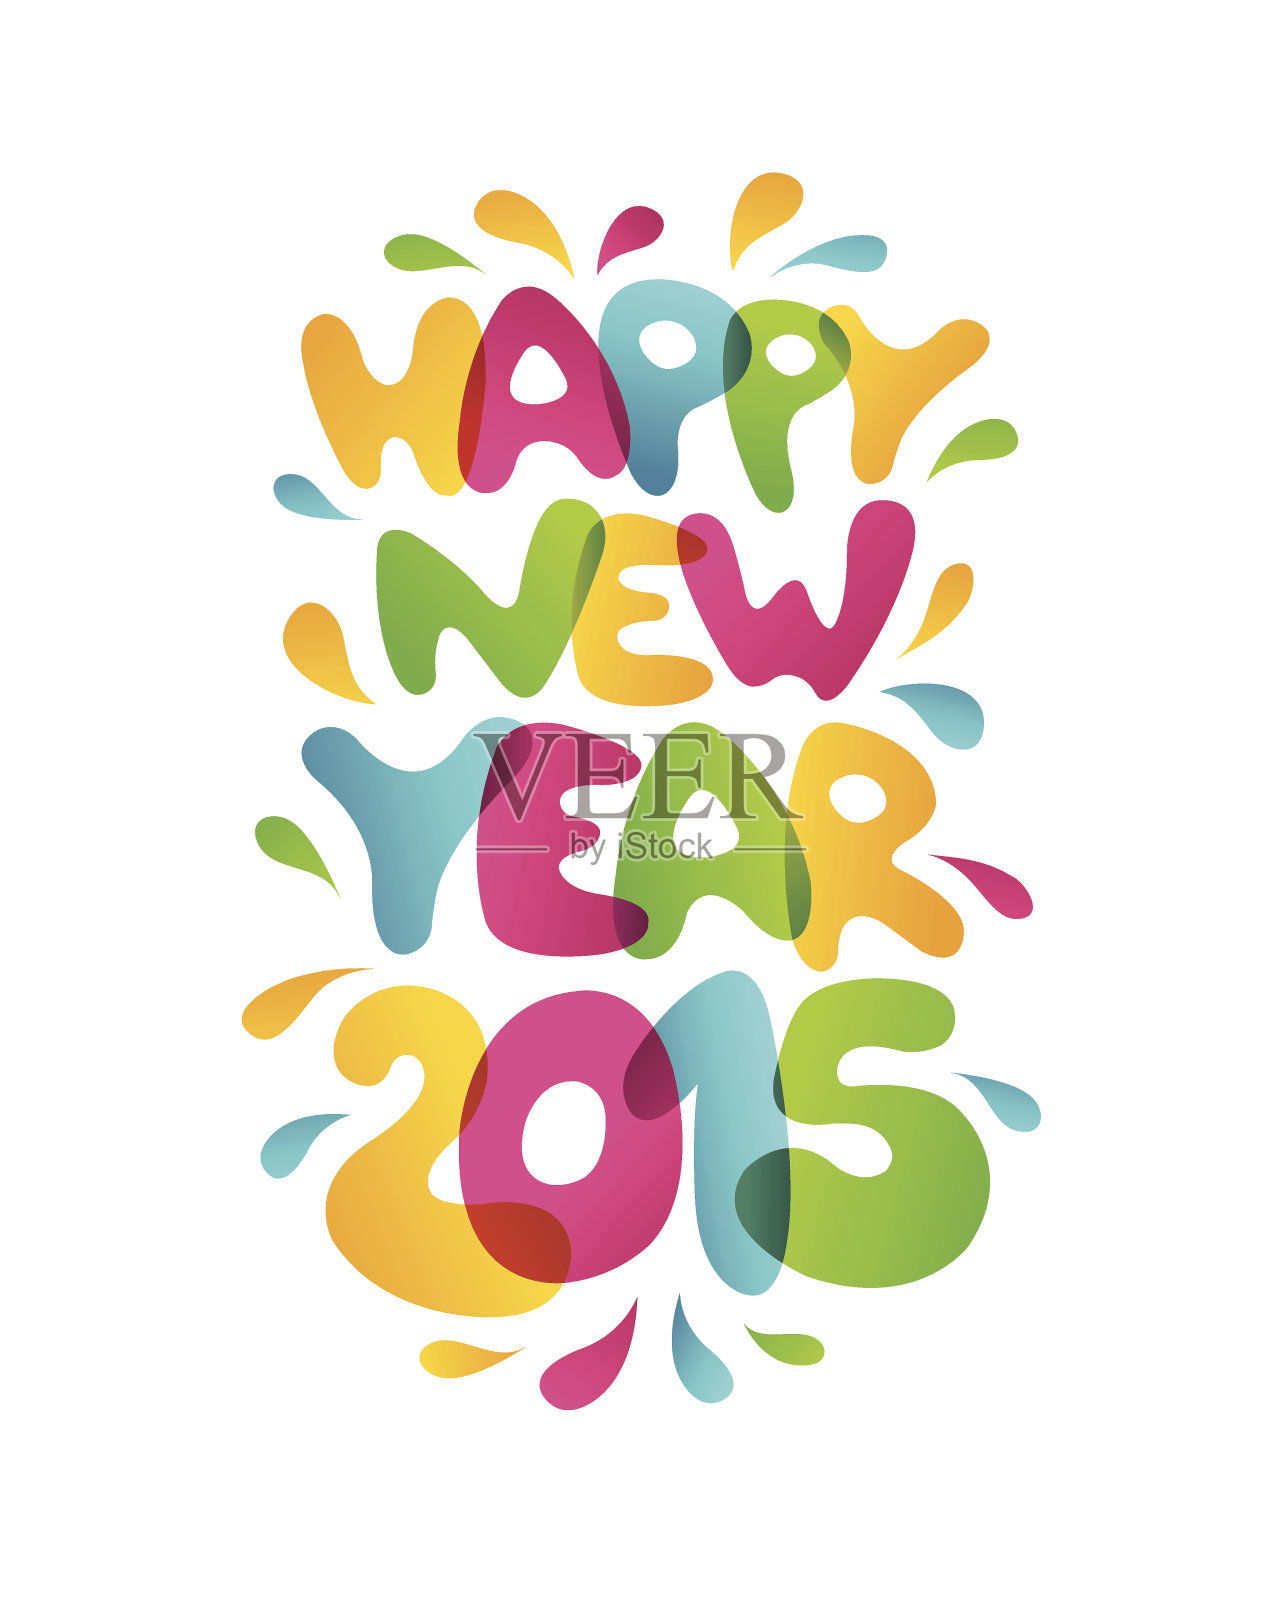 2015年新年快乐-矢量插图设计模板素材